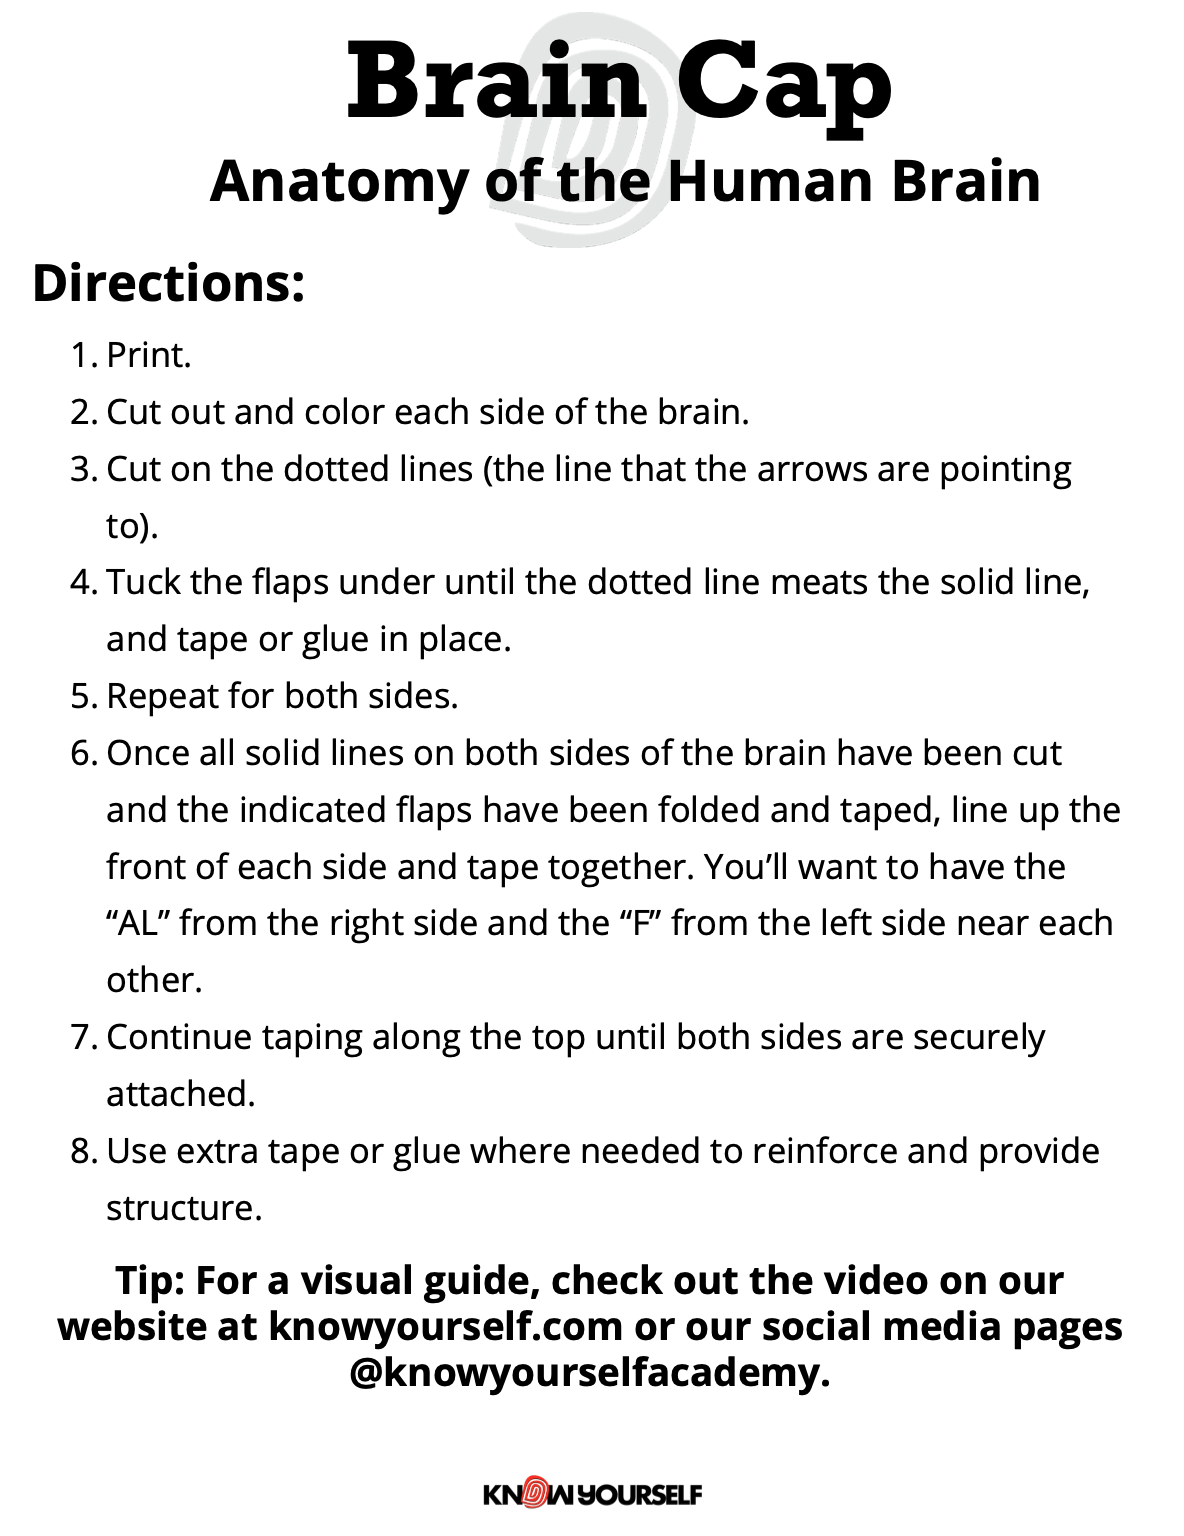 Brain Cap Activity